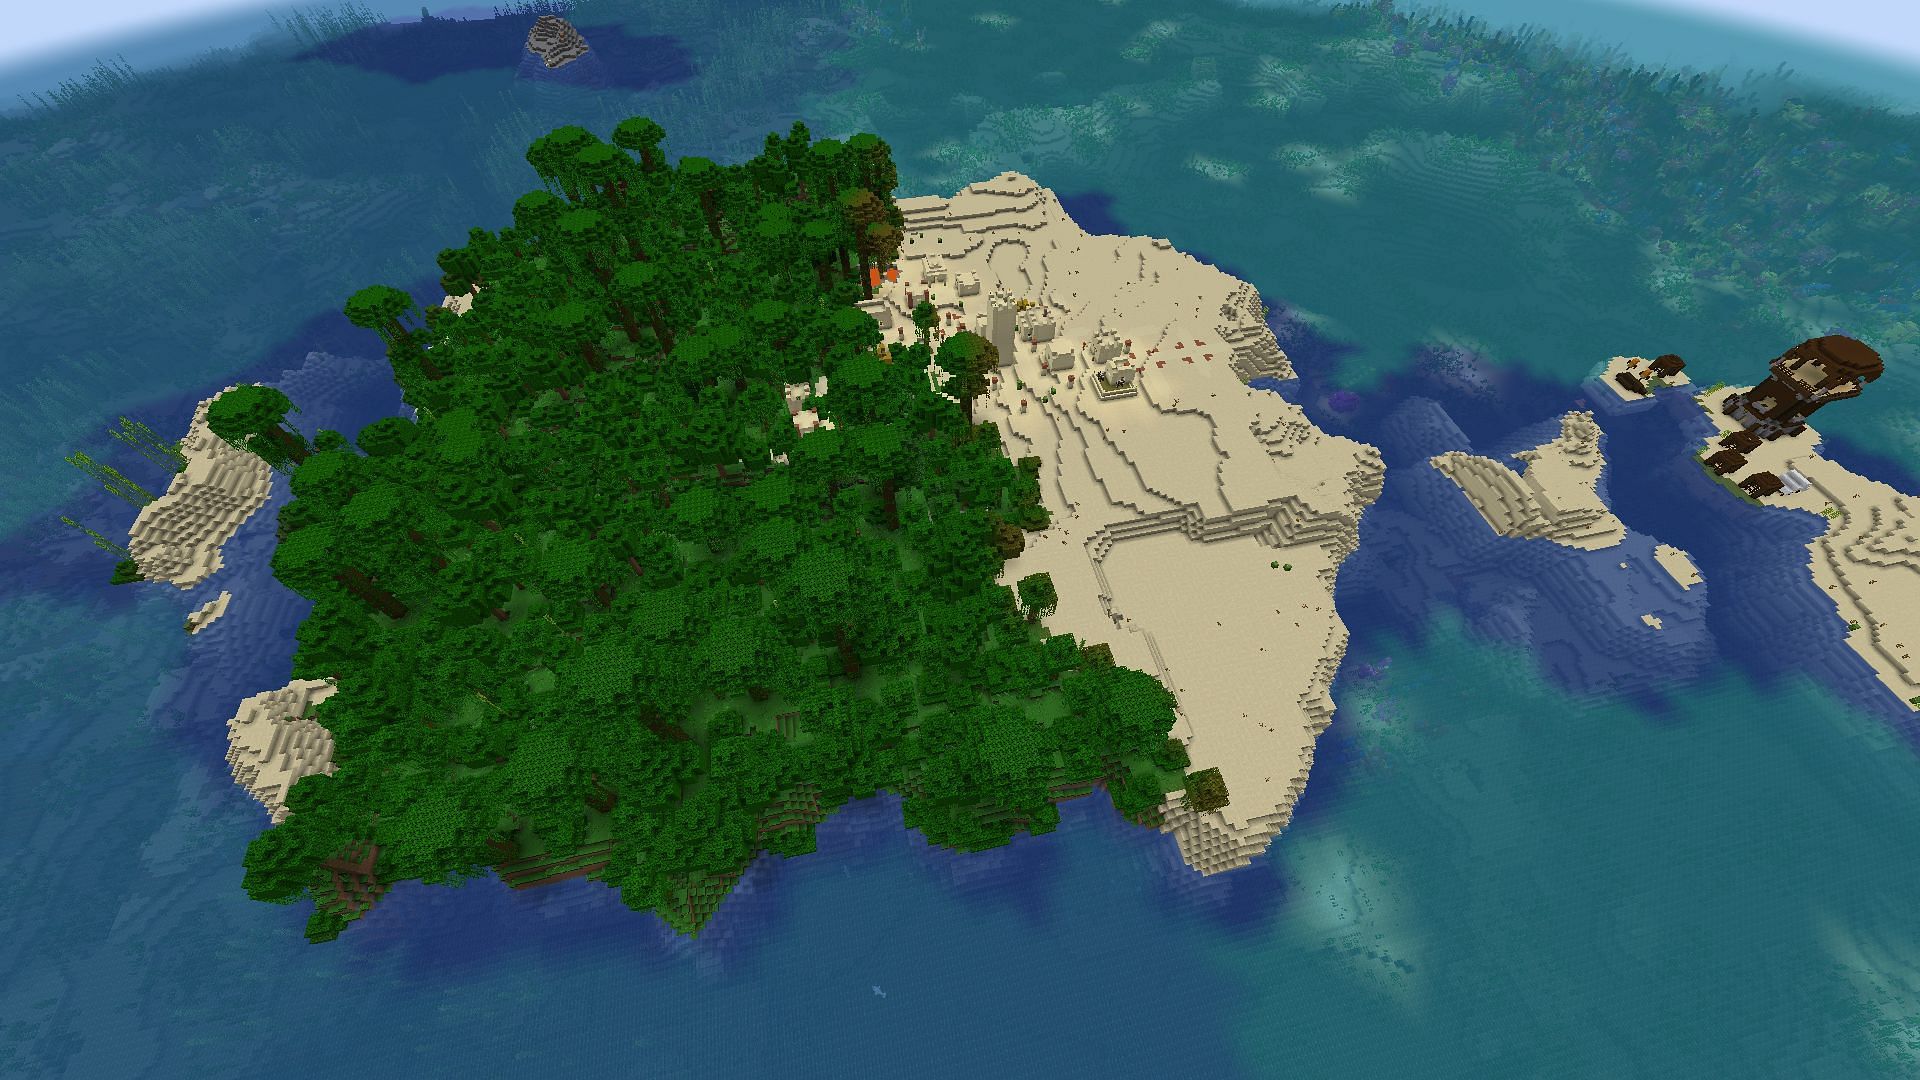 Восстановят ли игроки пустыню этого острова или оставят джунгли как есть? (Изображение взято с Stofix_/Reddit)